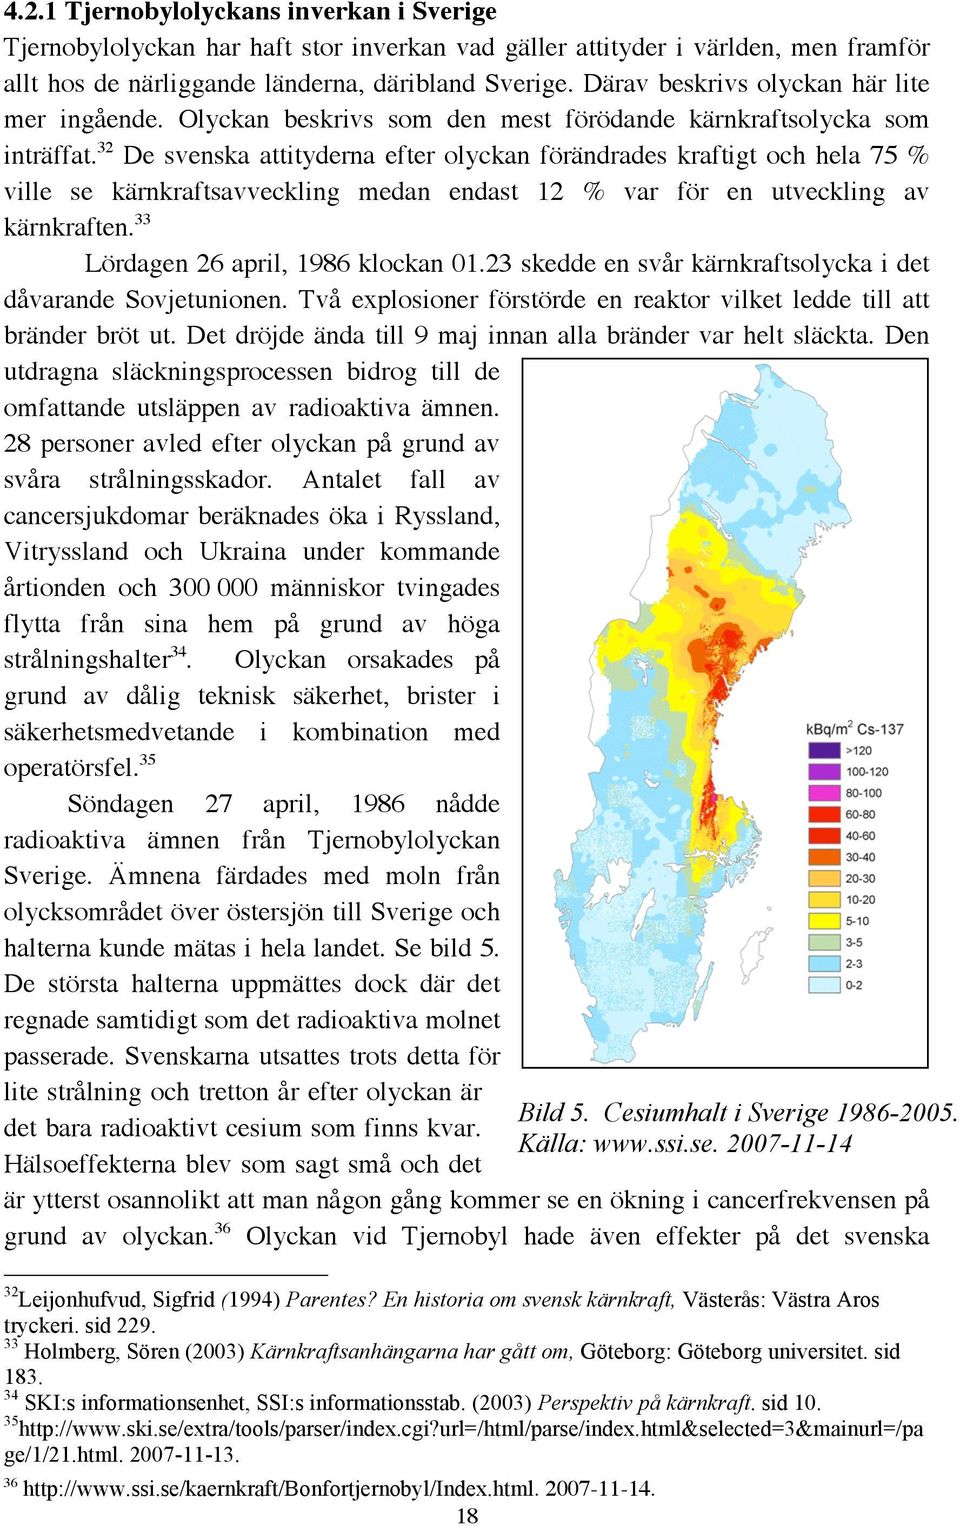 32 De svenska attityderna efter olyckan förändrades kraftigt och hela 75 % ville se kärnkraftsavveckling medan endast 12 % var för en utveckling av kärnkraften. 33 Lördagen 26 april, 1986 klockan 01.